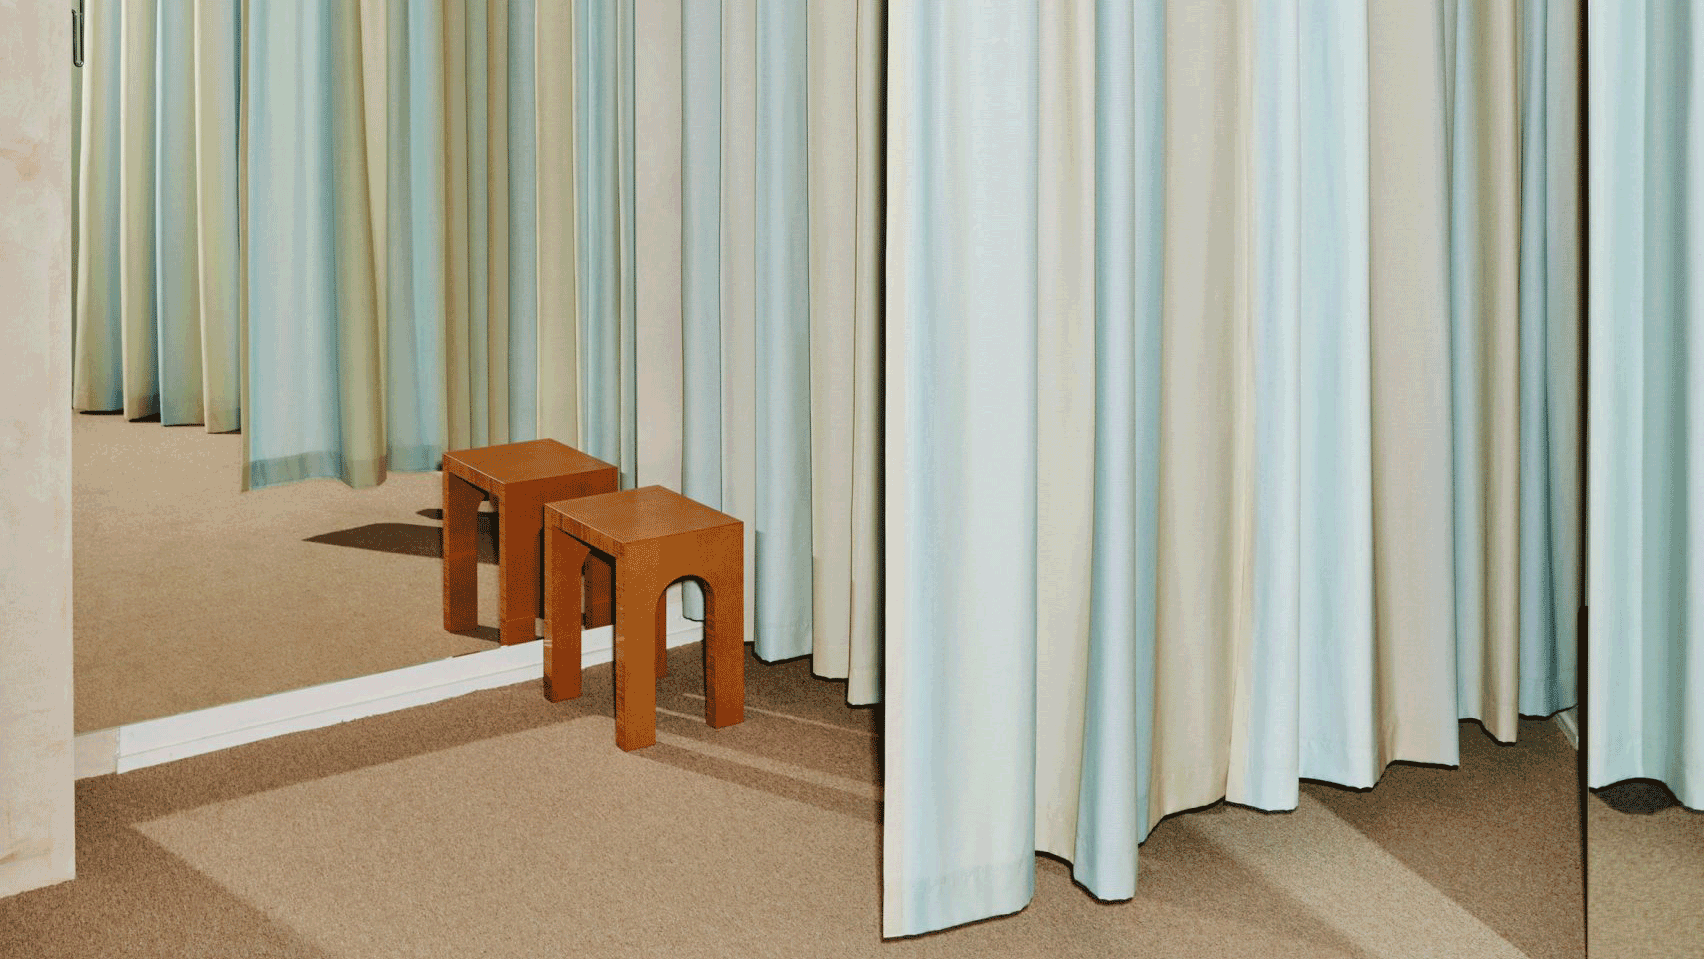 Holzweiler's Copenhagen store features minimalist interiors by Snøhetta